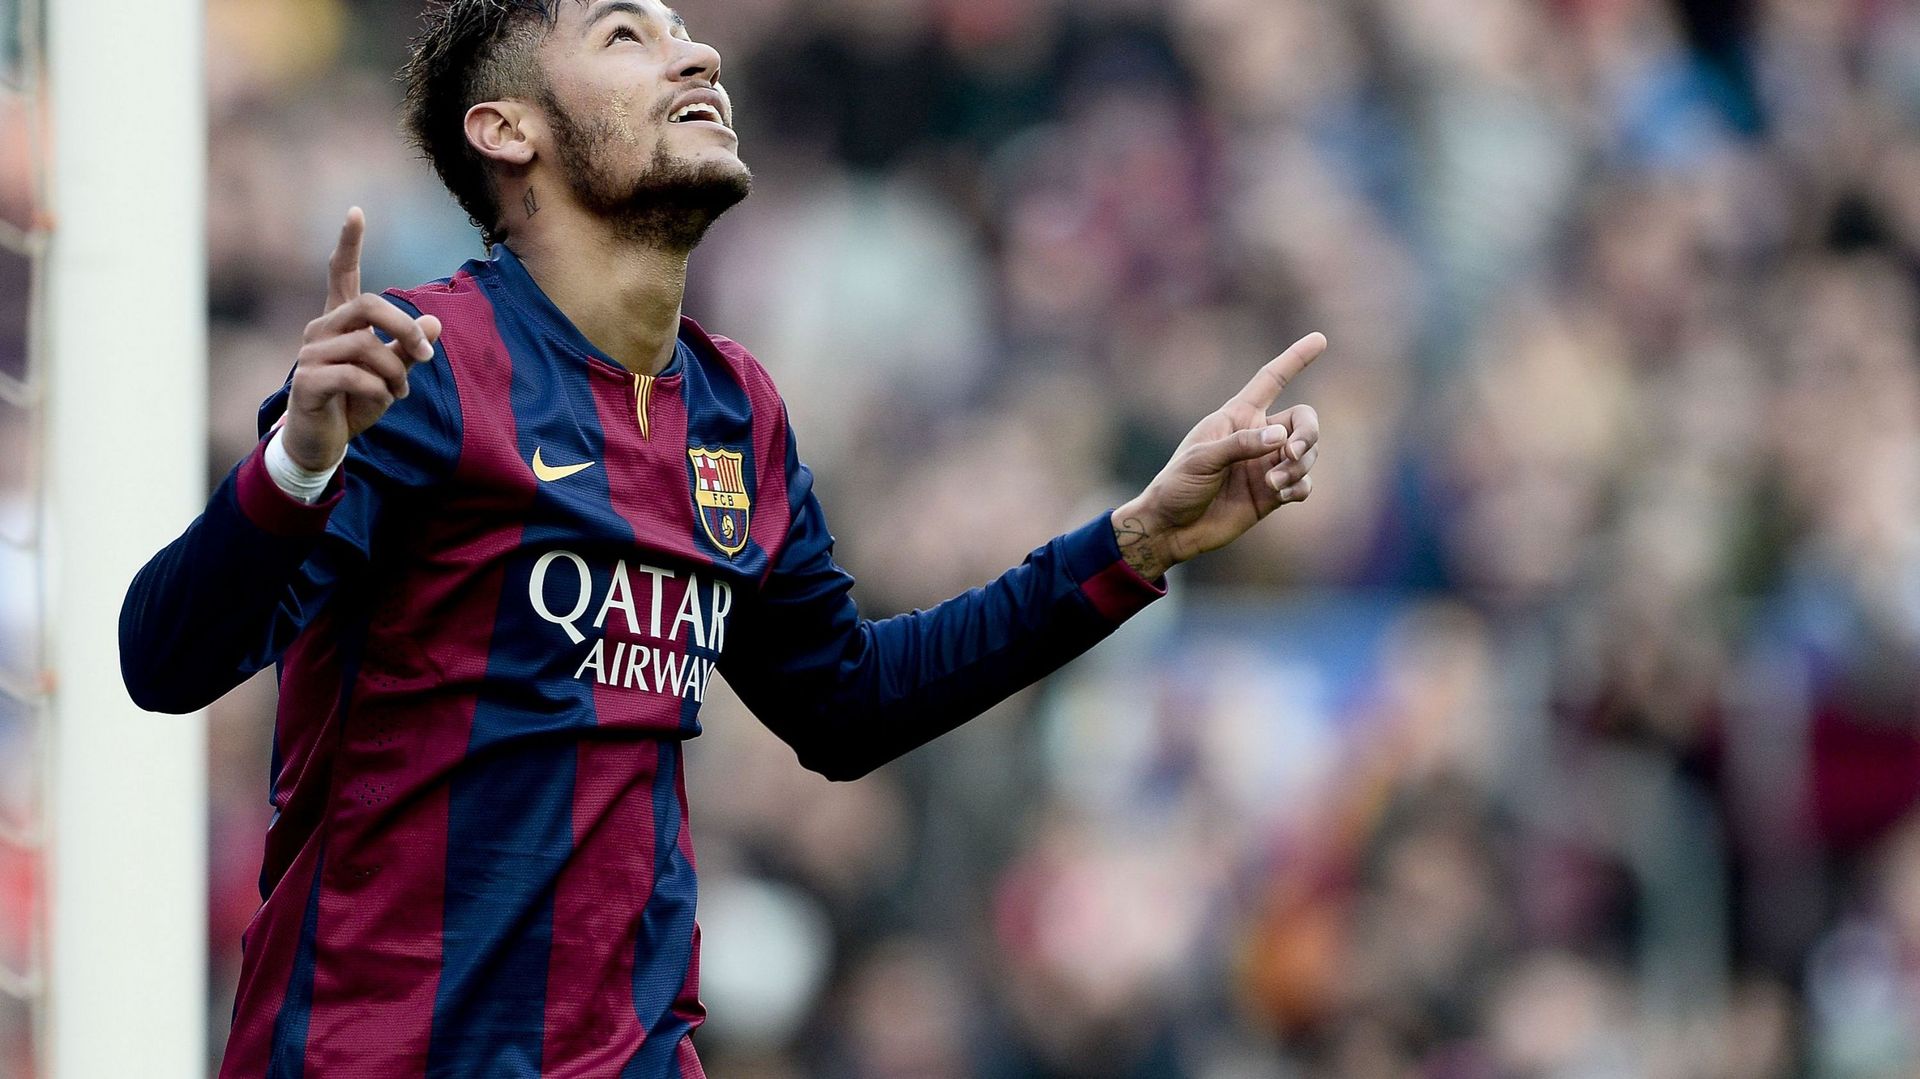 Un triplé du Barça, Neymar y croit